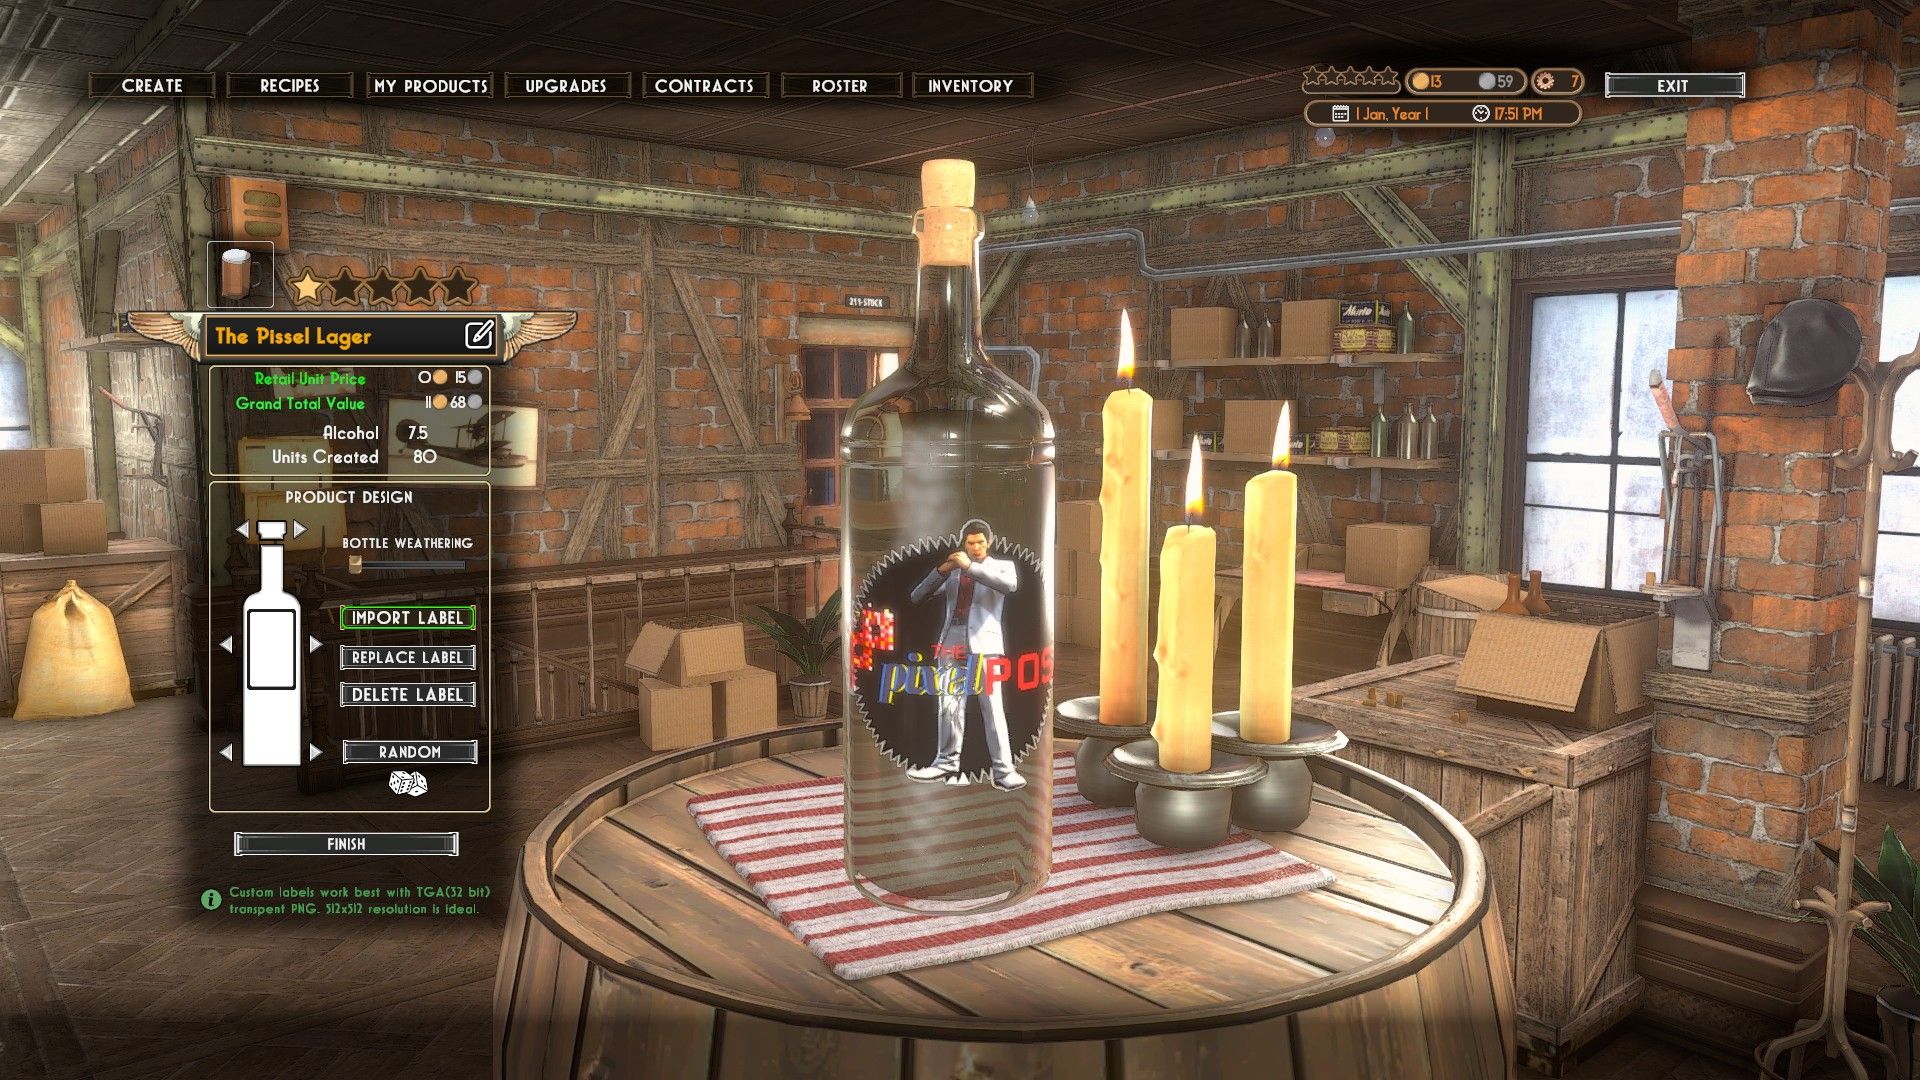 The Brew Barons : capture d'écrans d'une bouteille de bière avec une étiquettes The Pixel Post sur font de Kiryu de Yakuza